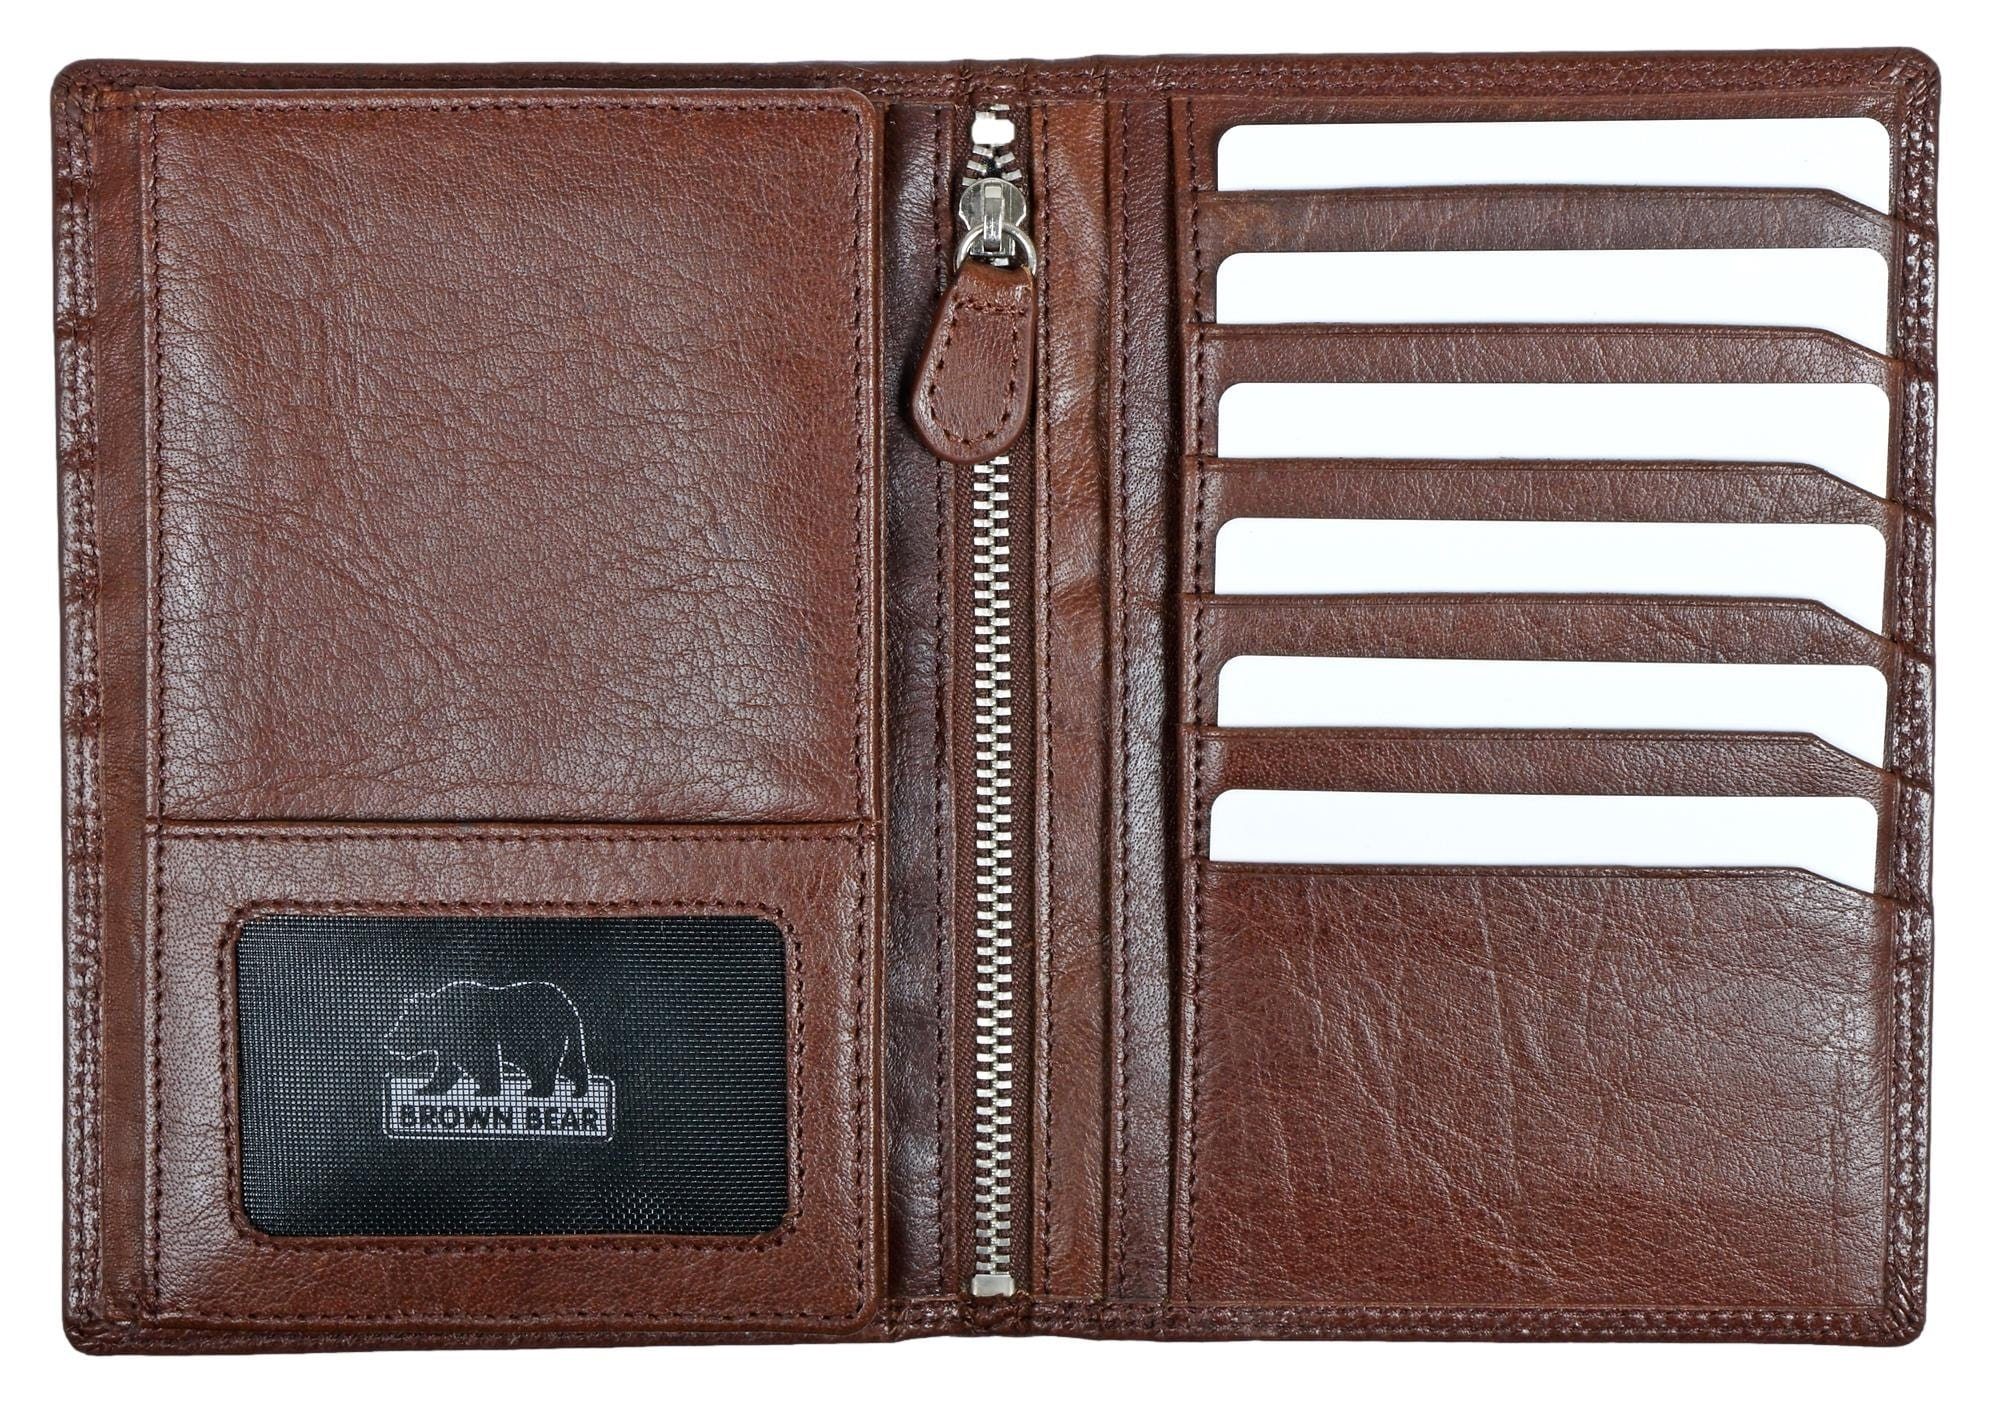 Brown Bear Brieftasche Classic 8013 13 Braun Münzfach RFID Echtleder, Sichtfächer ohne Braun Ausweisfächer 5 Schutz Toscana Kartenfächer